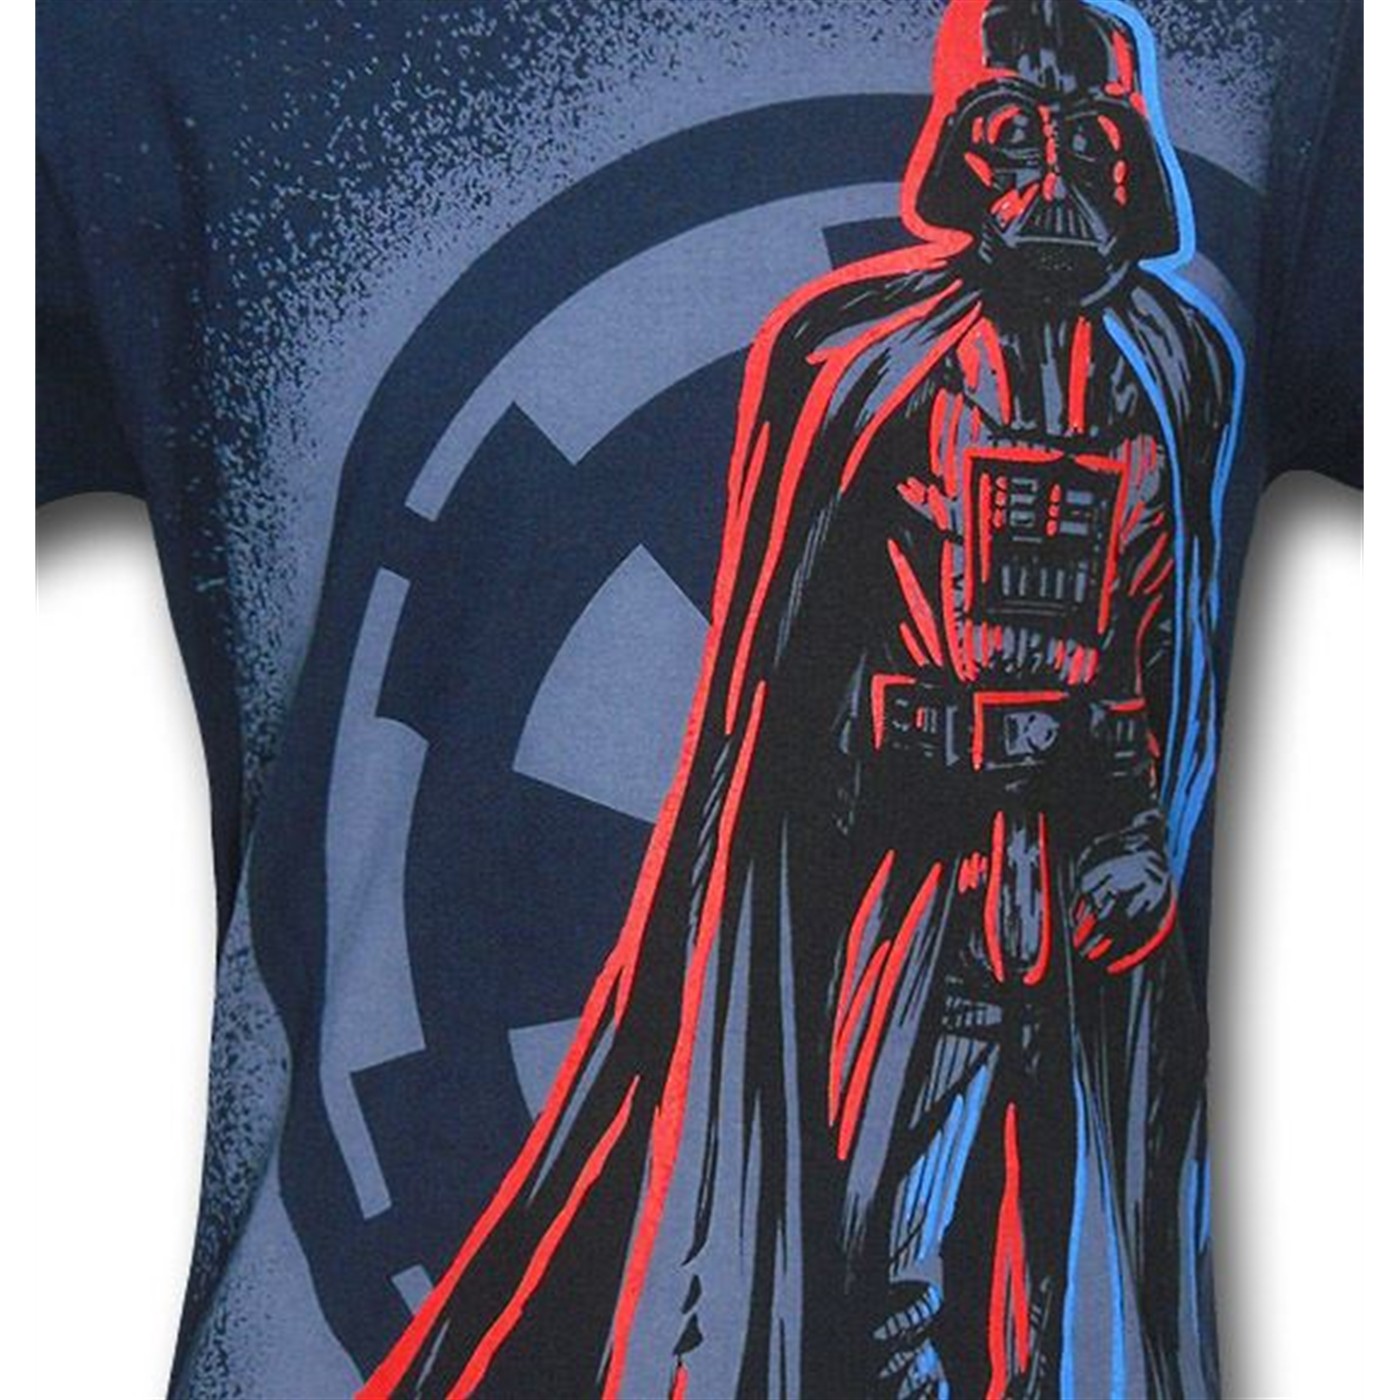 Darth Vader The Walking Sith T-Shirt